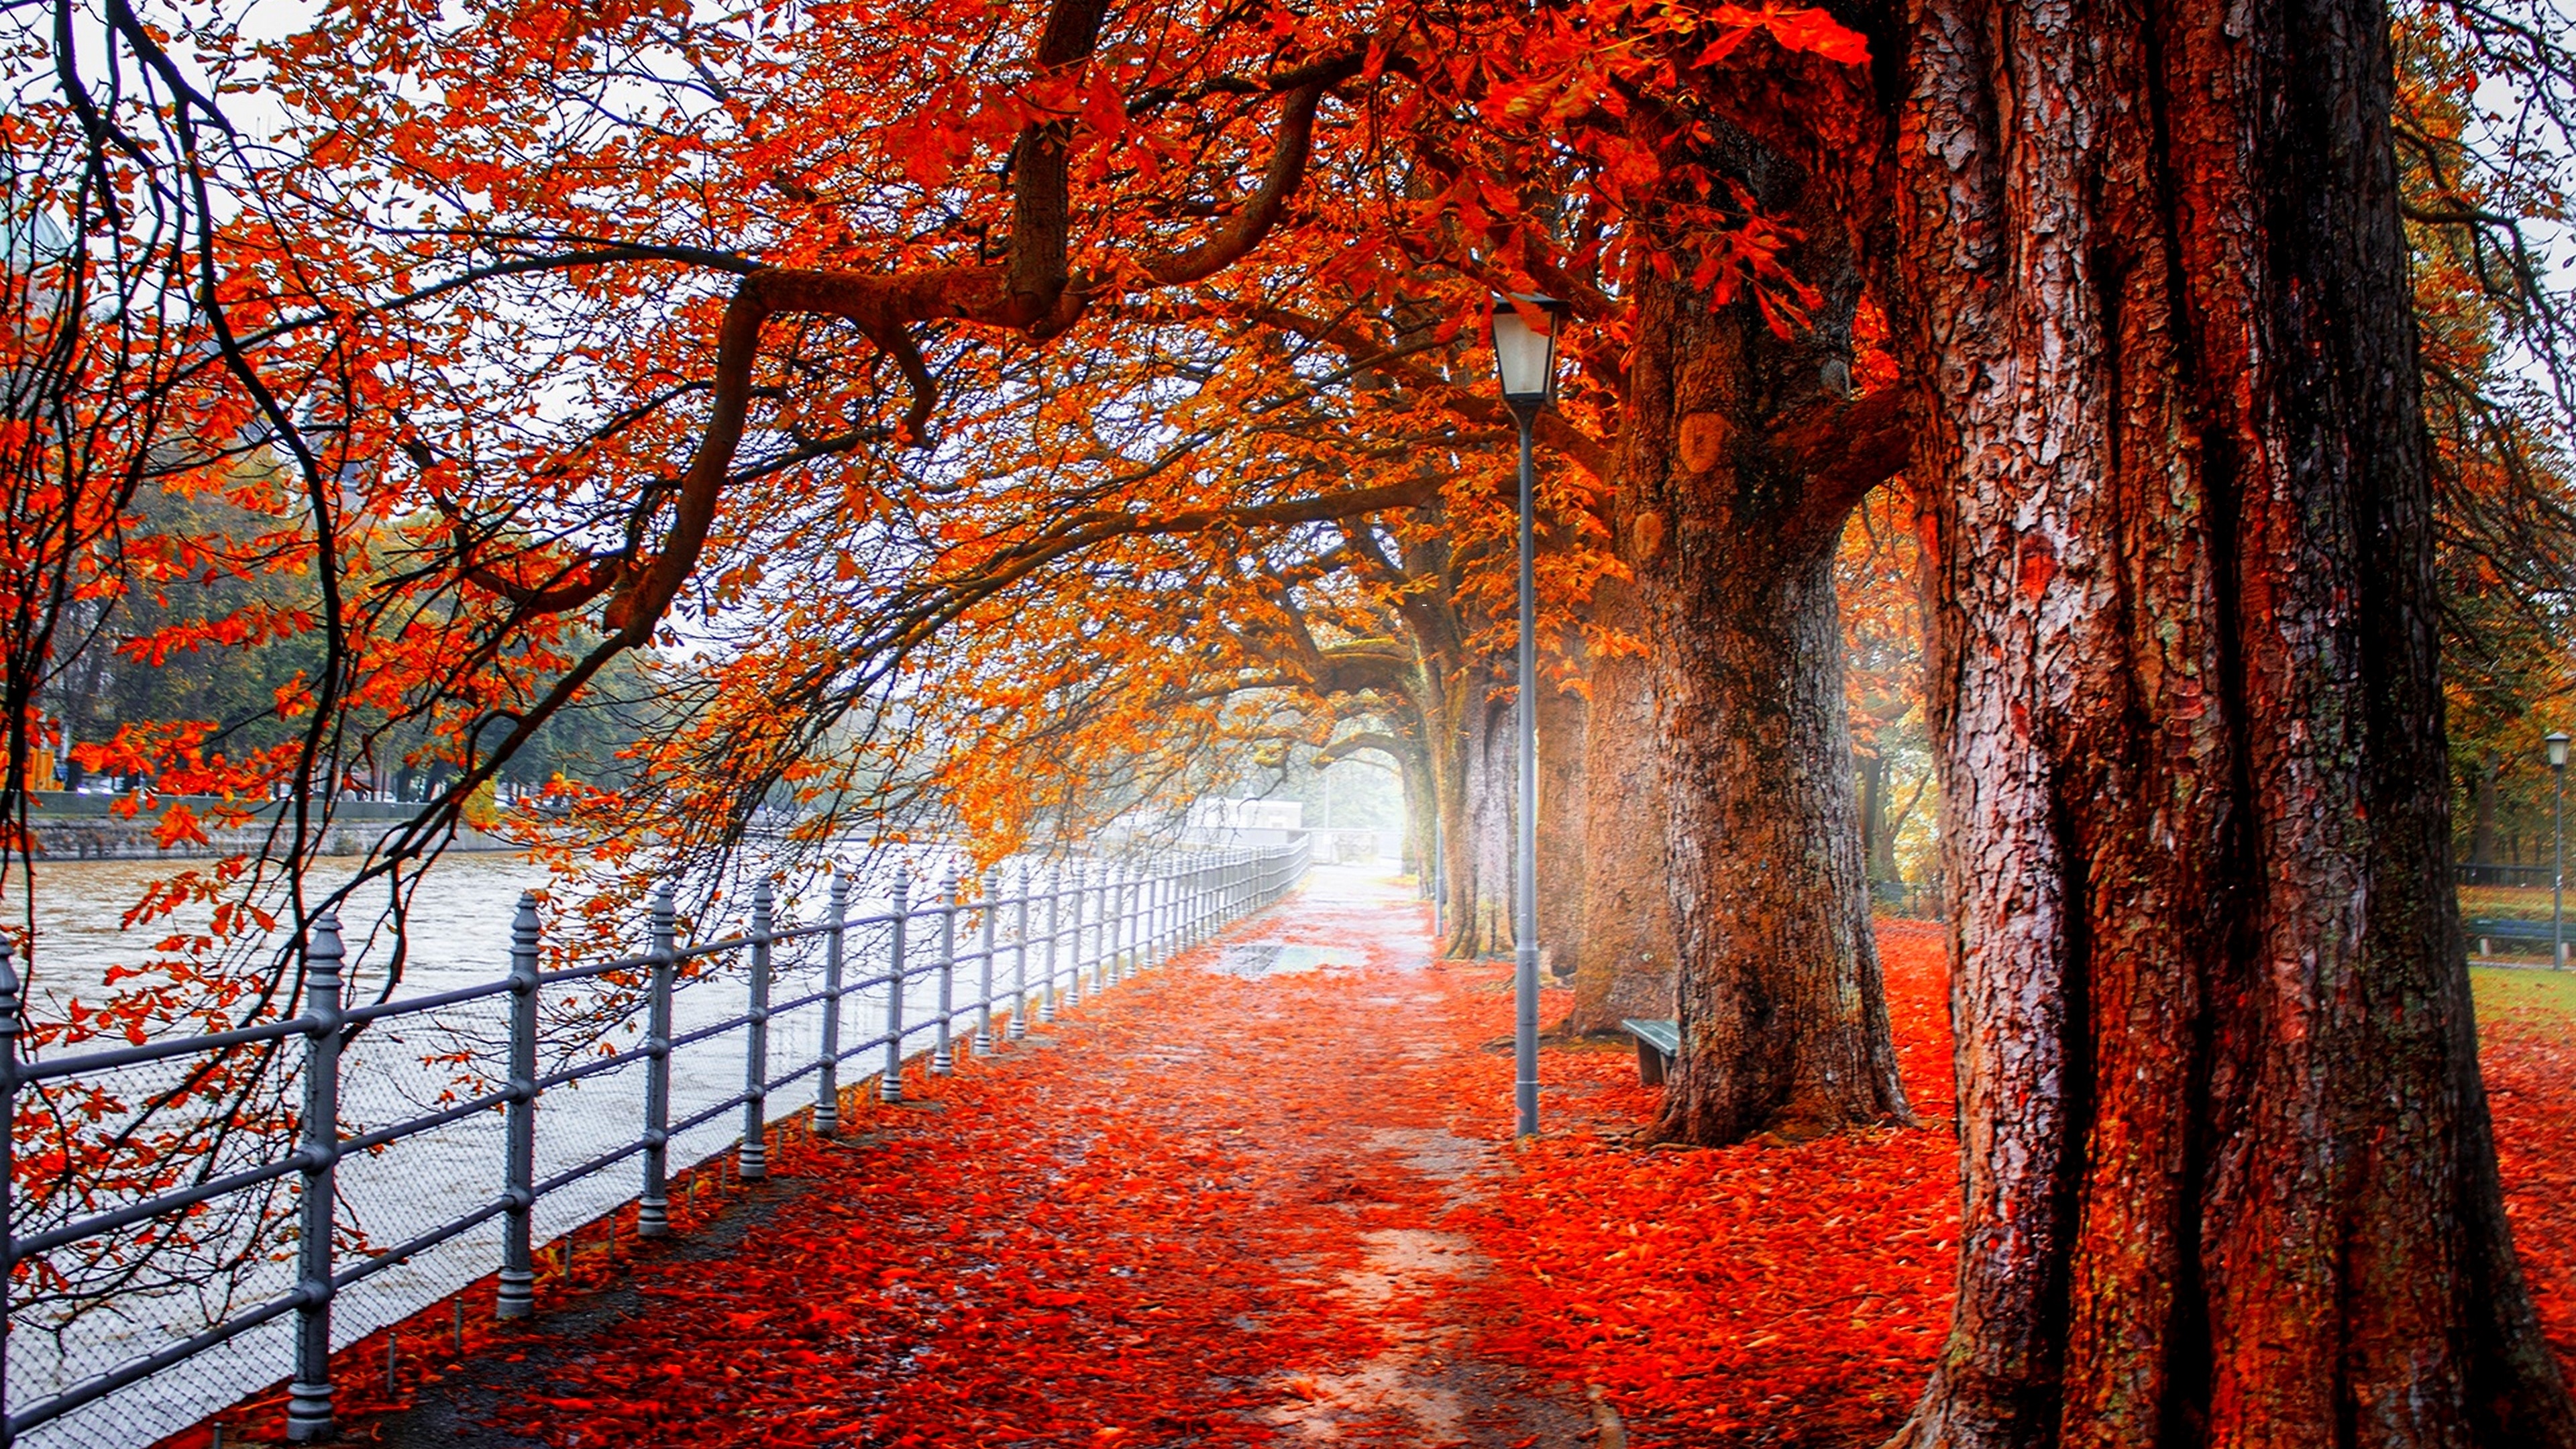 670992 免費下載壁紙 树, 摄影, 公园, 秋季, 栅栏, 叶子, 橙色（颜色） 屏保和圖片